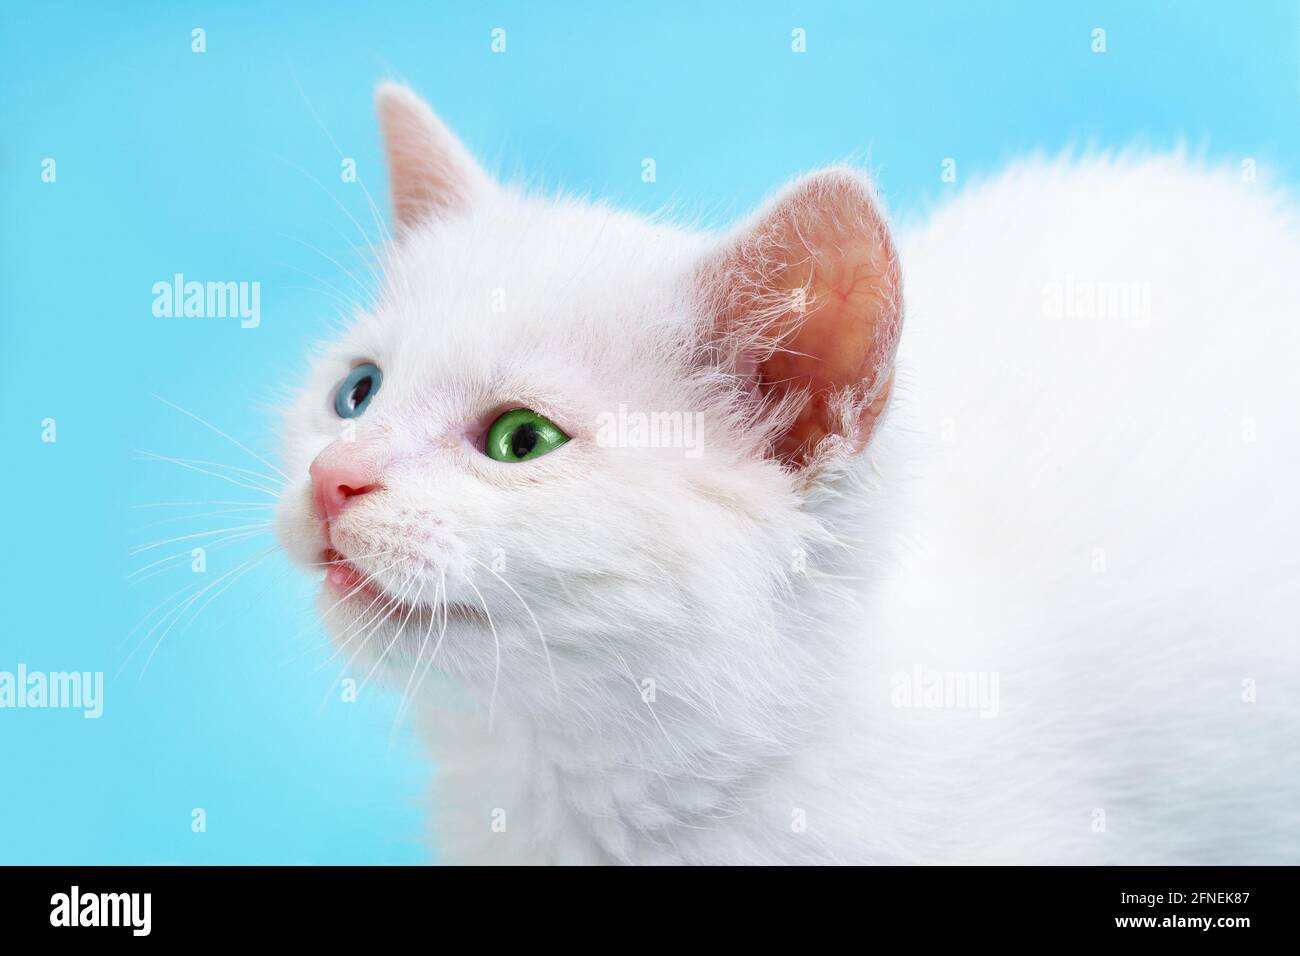 Porträt eines kleinen weißen Kätzchens mit blauen und grünen Augen auf blauem Hintergrund. Nahaufnahme. Stockfoto